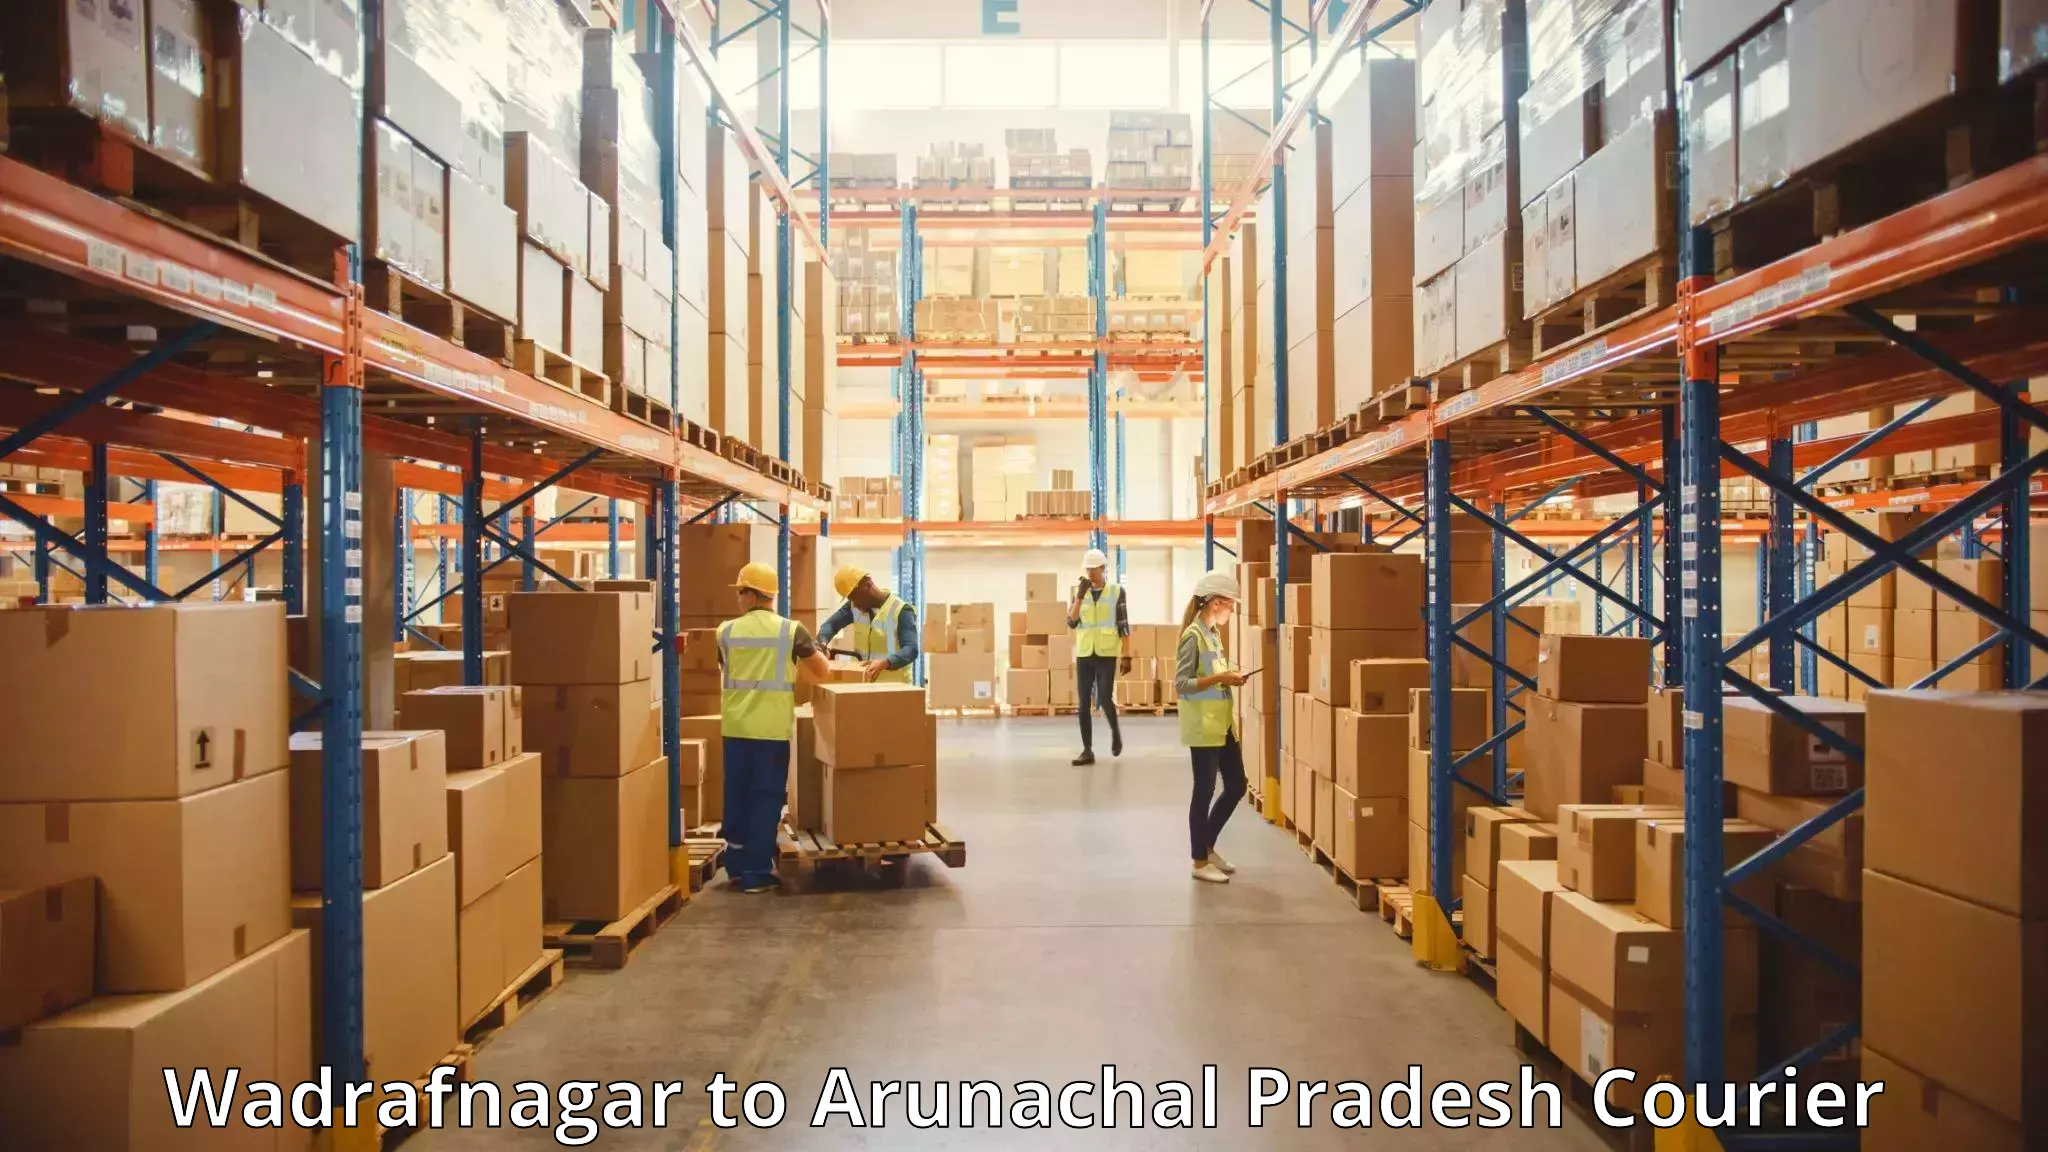 Nationwide luggage courier Wadrafnagar to Arunachal Pradesh